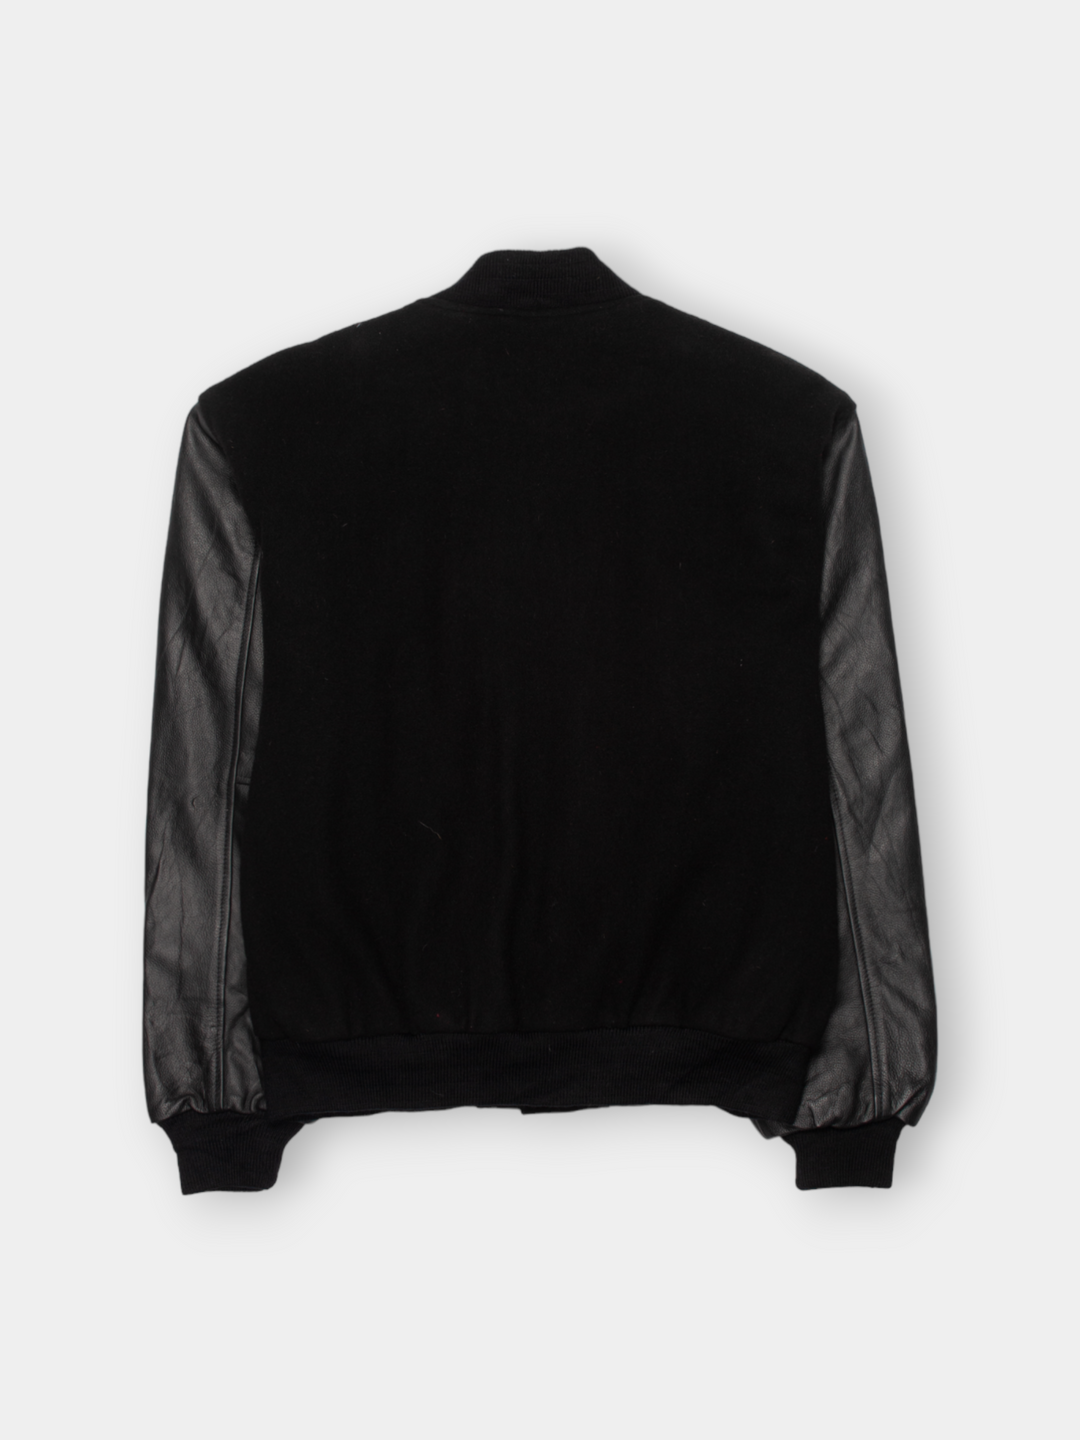 Vintage eBay Inventors Club Woolen Varsity Jacket (M)